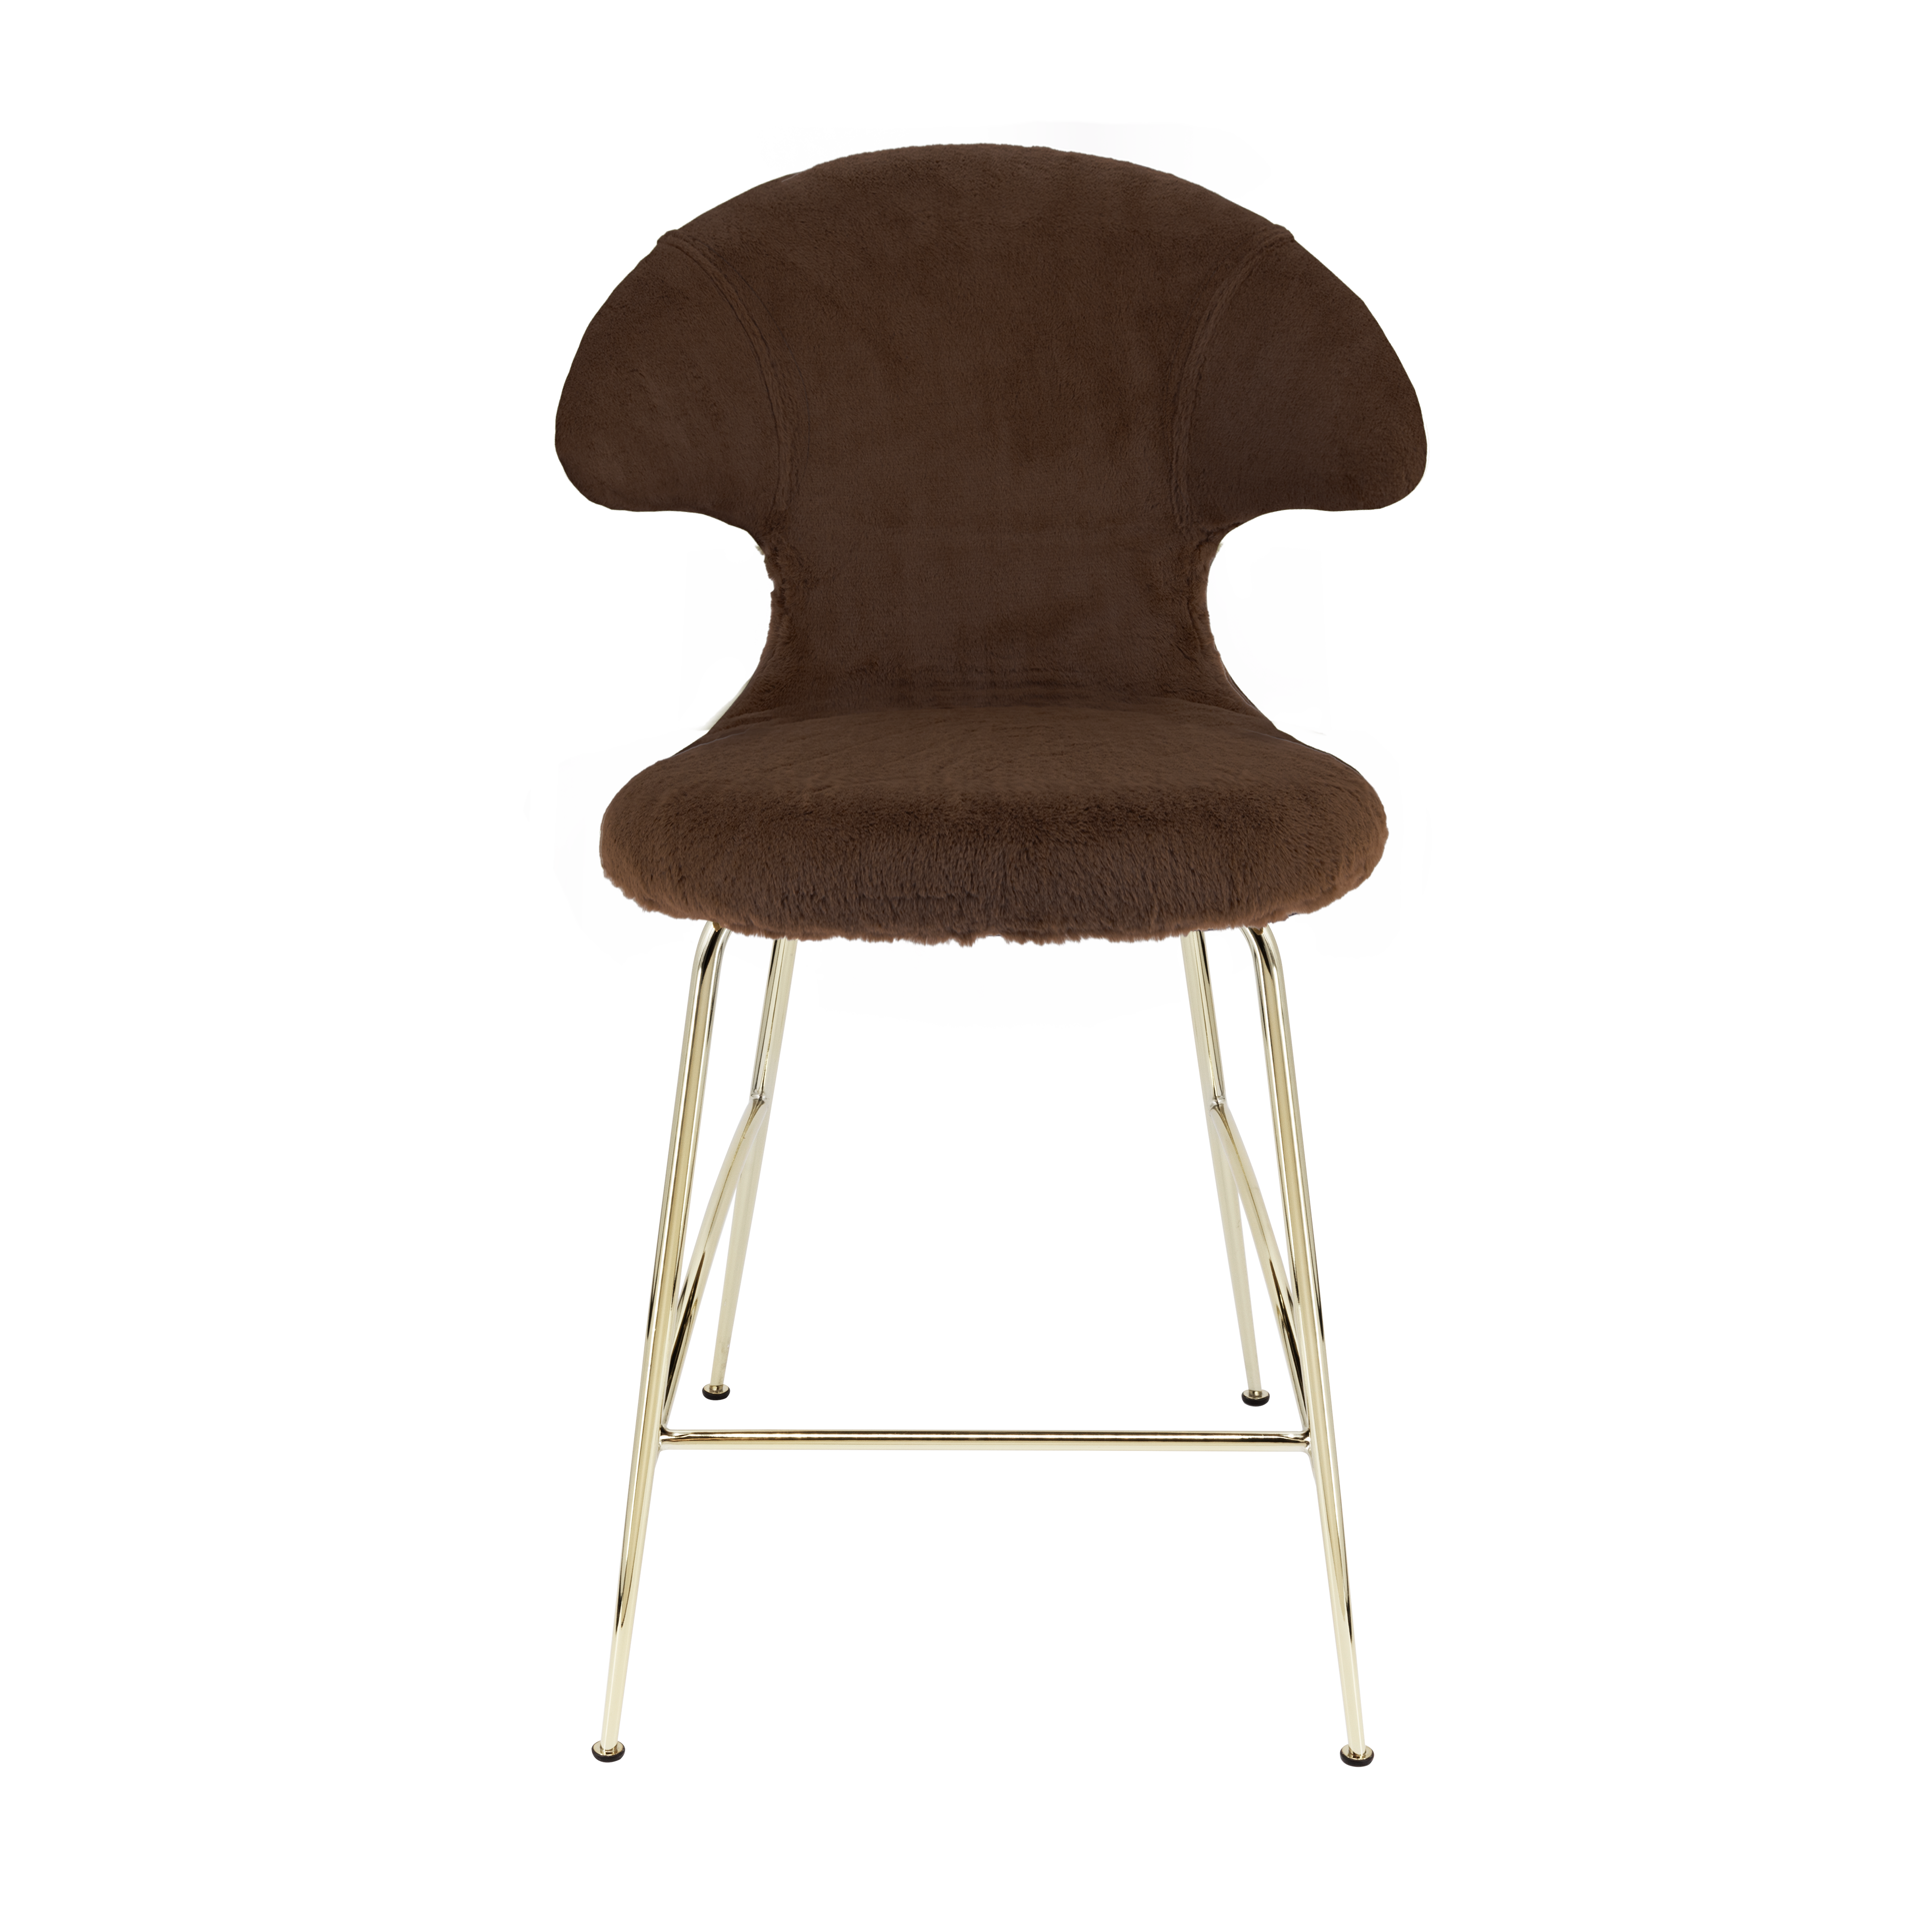 Time Flies Counter Stuhl in Teddy Brown präsentiert im Onlineshop von KAQTU Design AG. Barstuhl mit Armlehne ist von Umage